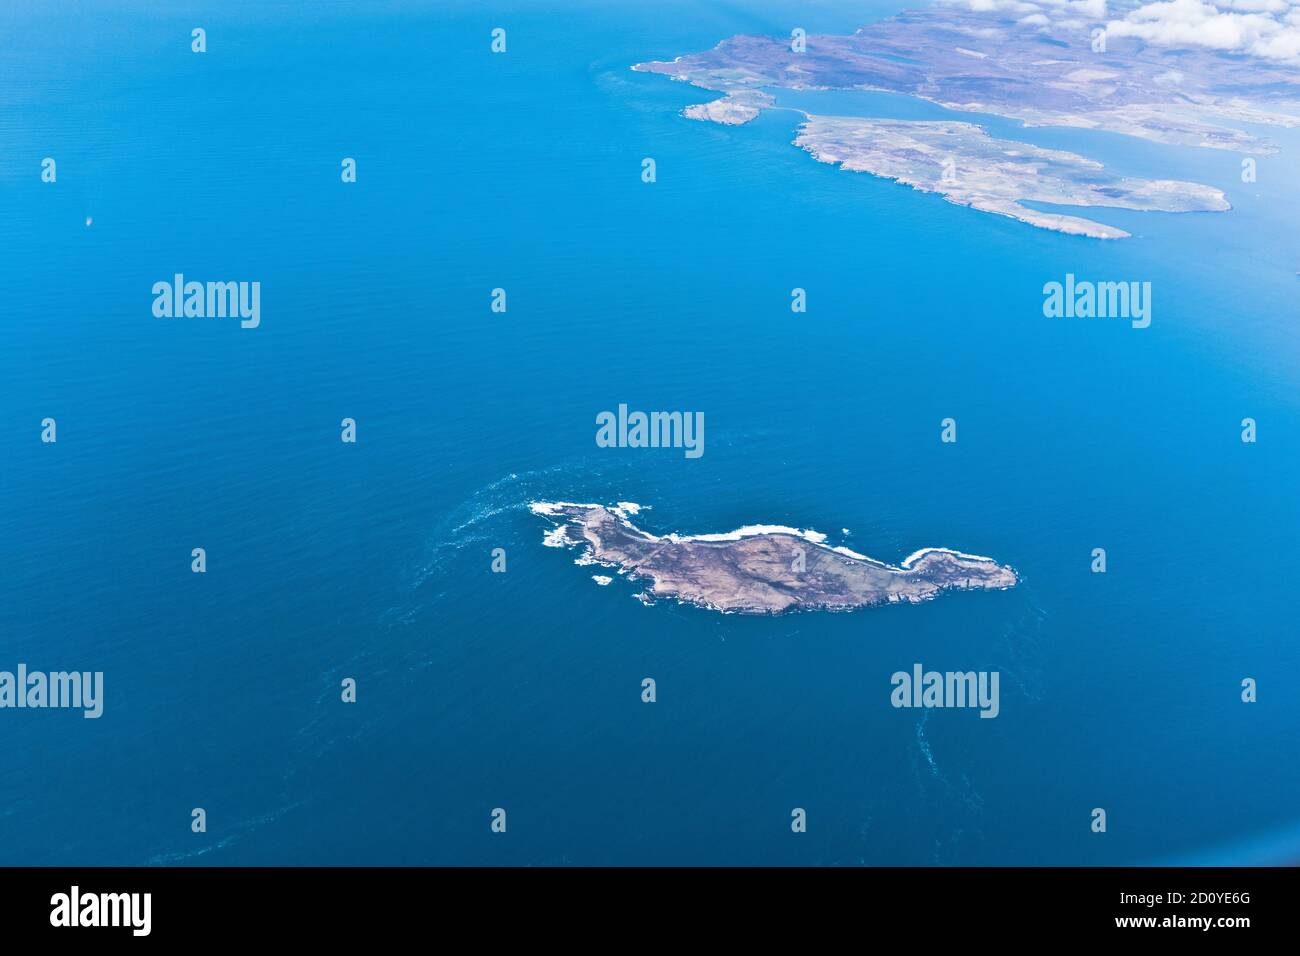 dh Iles écossaises Ecosse SWONA PENTLAND FIRTH vue aérienne de Depuis le haut de l'île, la côte d'Orkney Banque D'Images